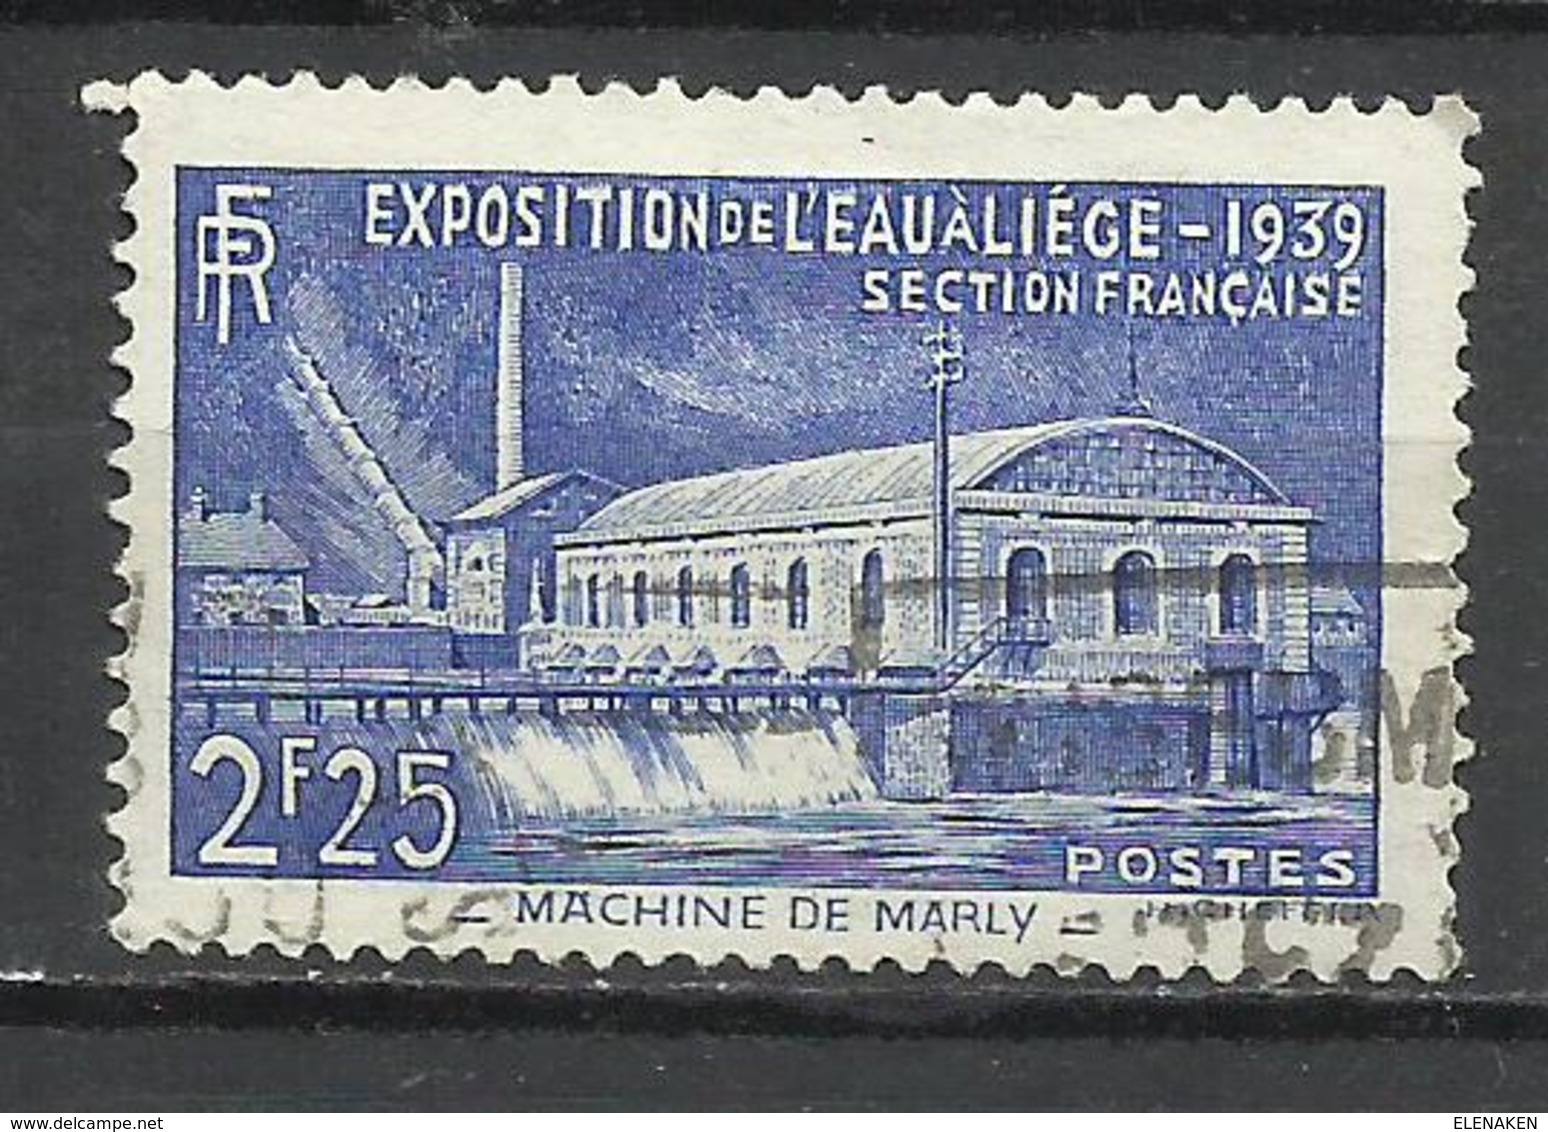 6252-SELLO FRANCIA 1939 EXPOSICION AGUA Nº430,VALOR YVERT 5,50€ Euro;,USADO. - Usados